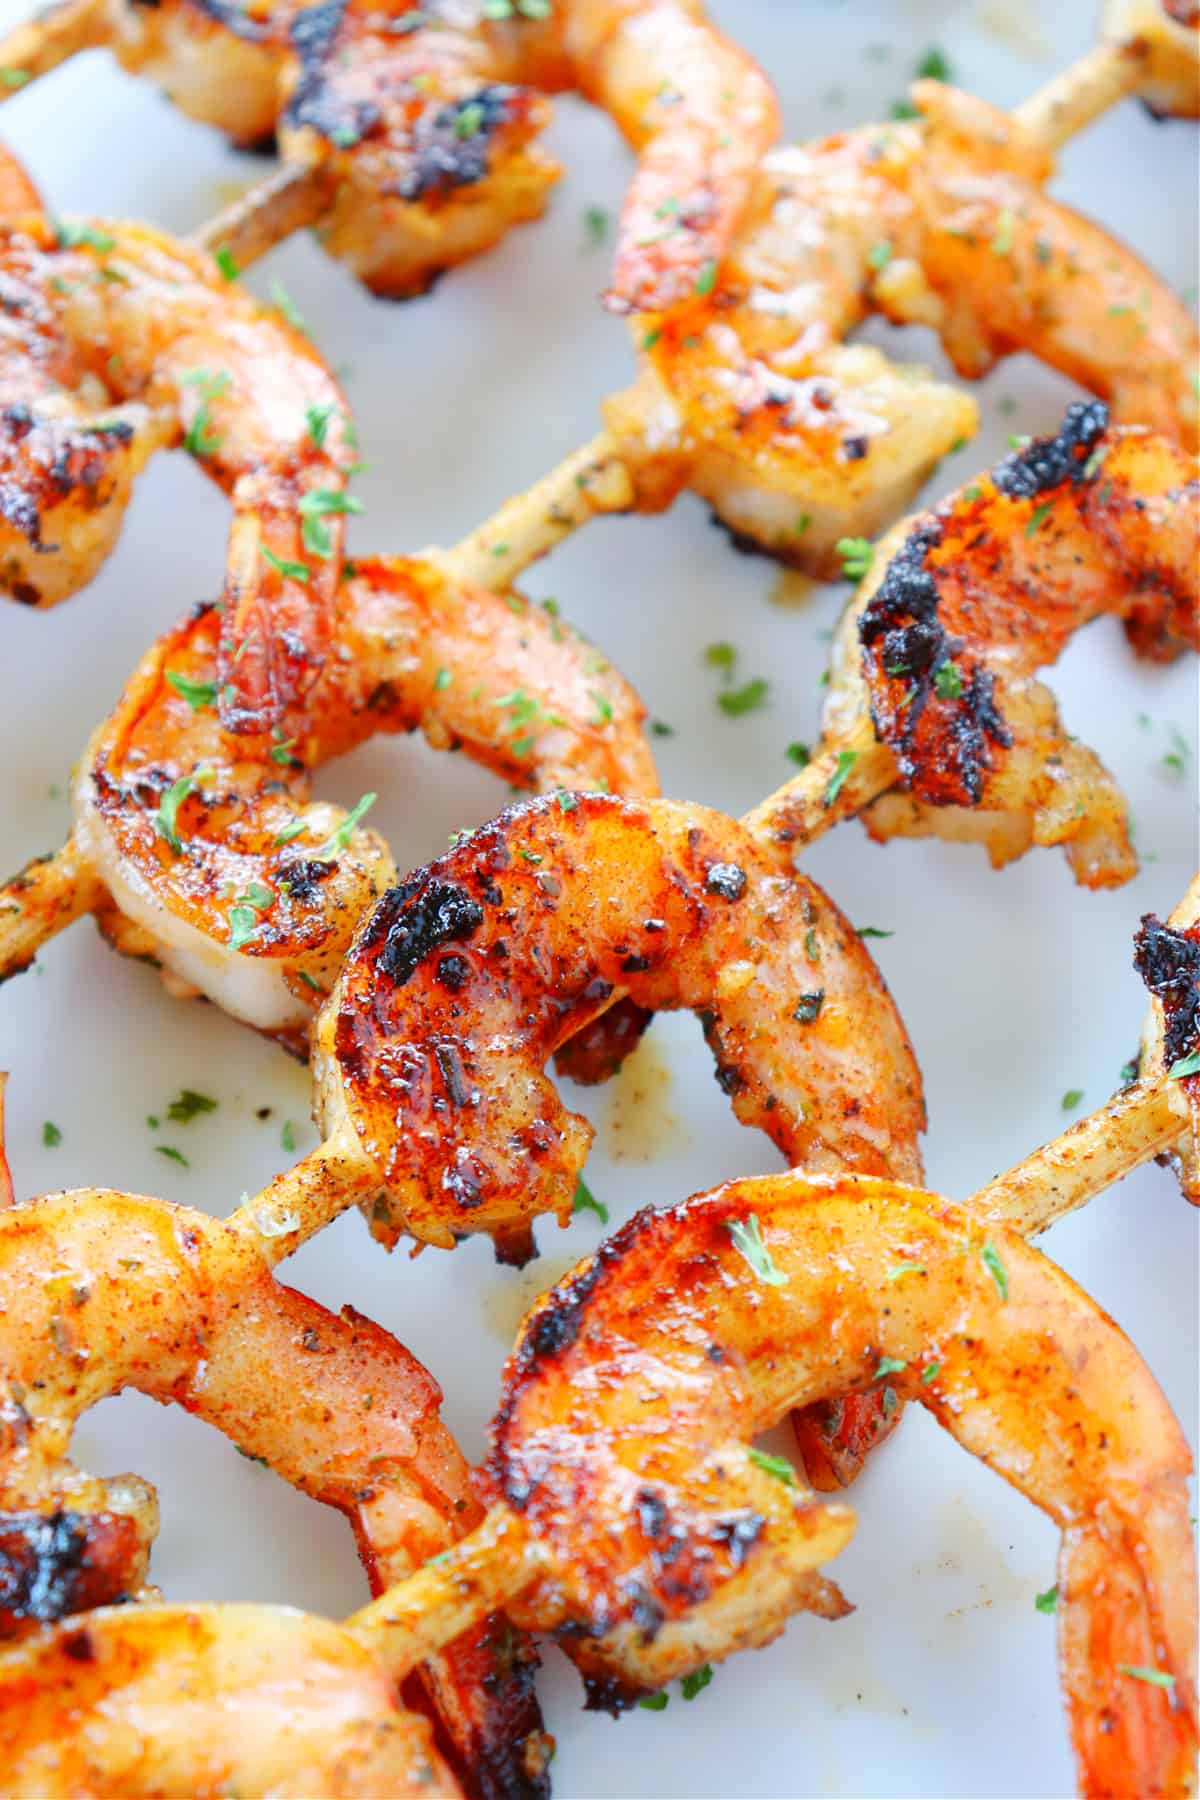 Grilled shrimp on plate.